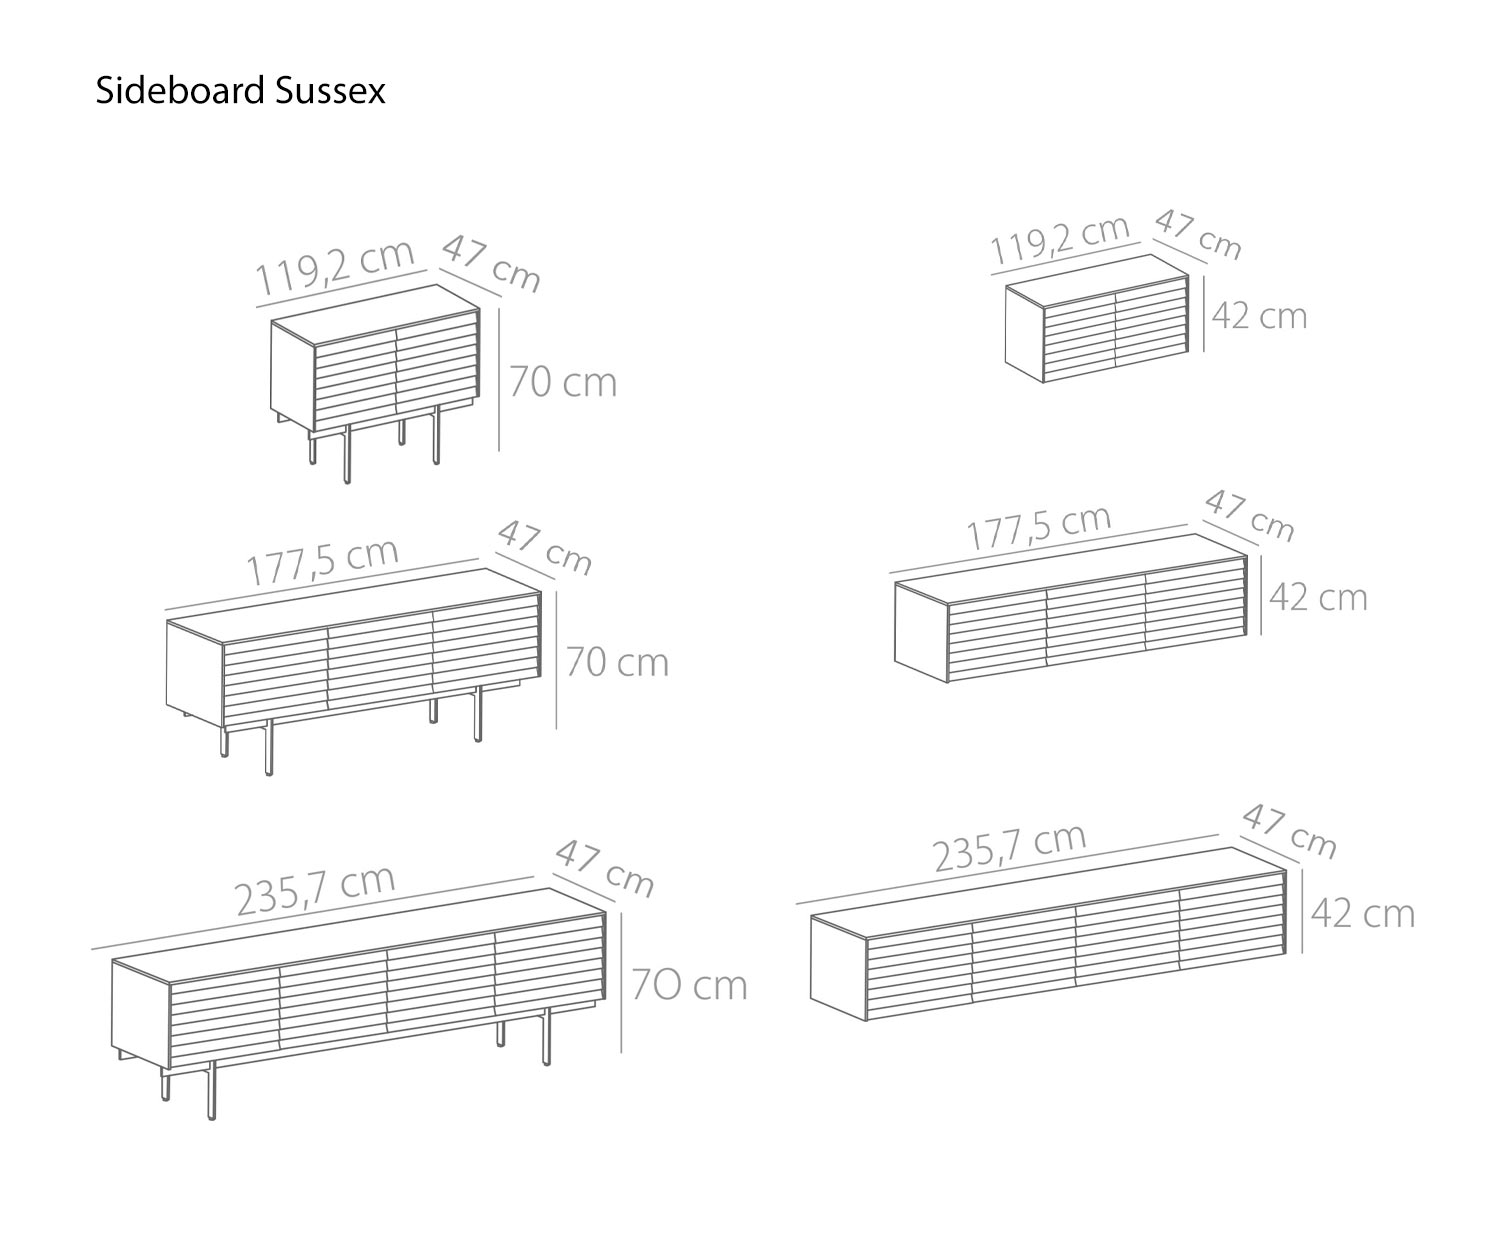 Sideboard design Sussex de Punt Largeur 119 cm 177 cm 235 cm Dimensions de l'esquisse